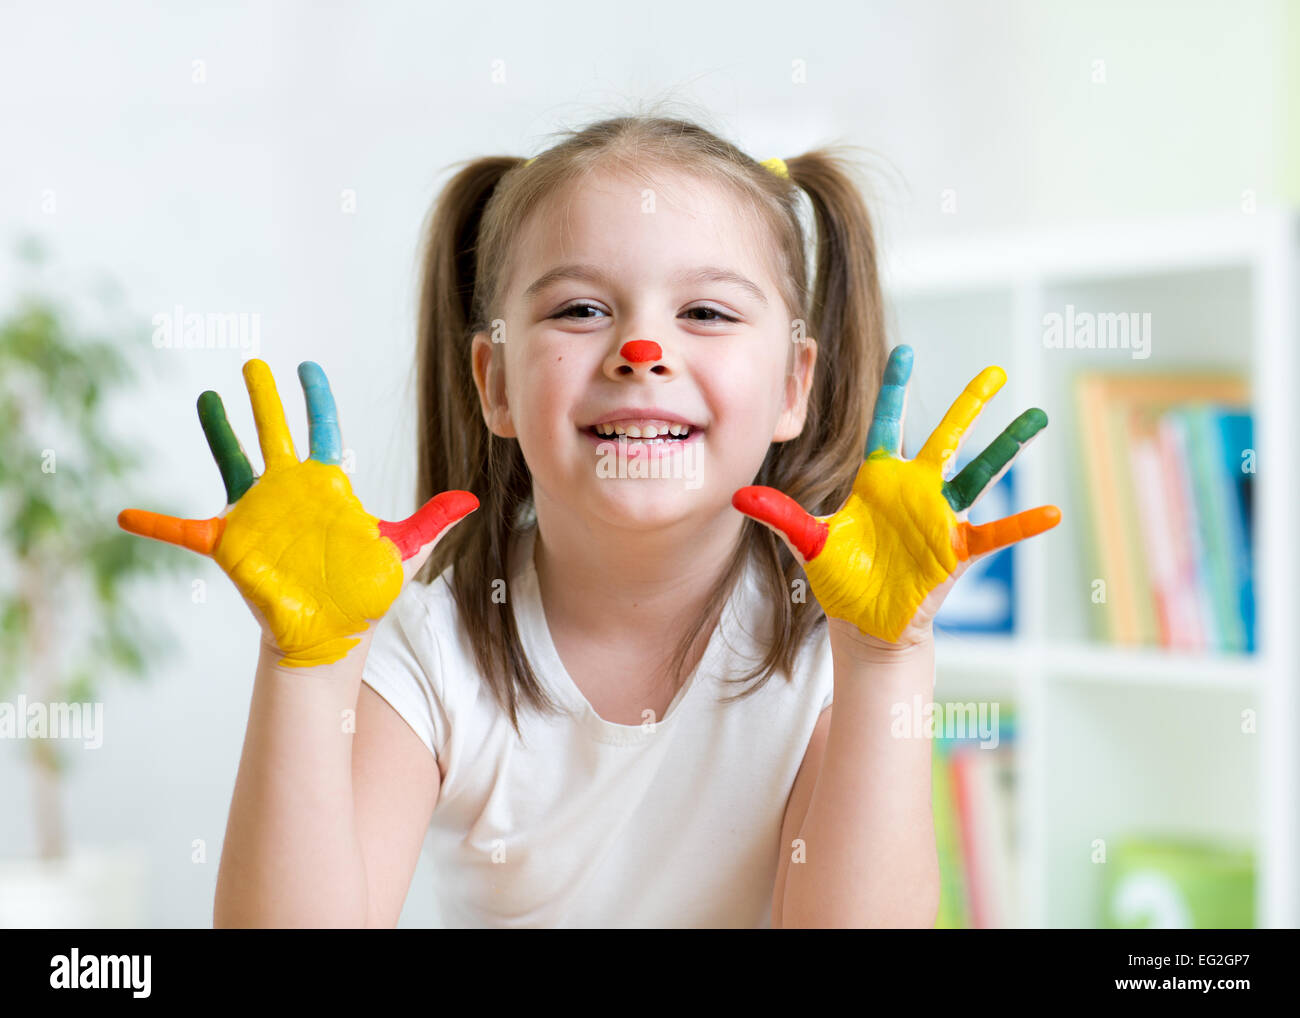 Cute kid niño mostrando sus manos pintadas en colores brillantes Foto de stock